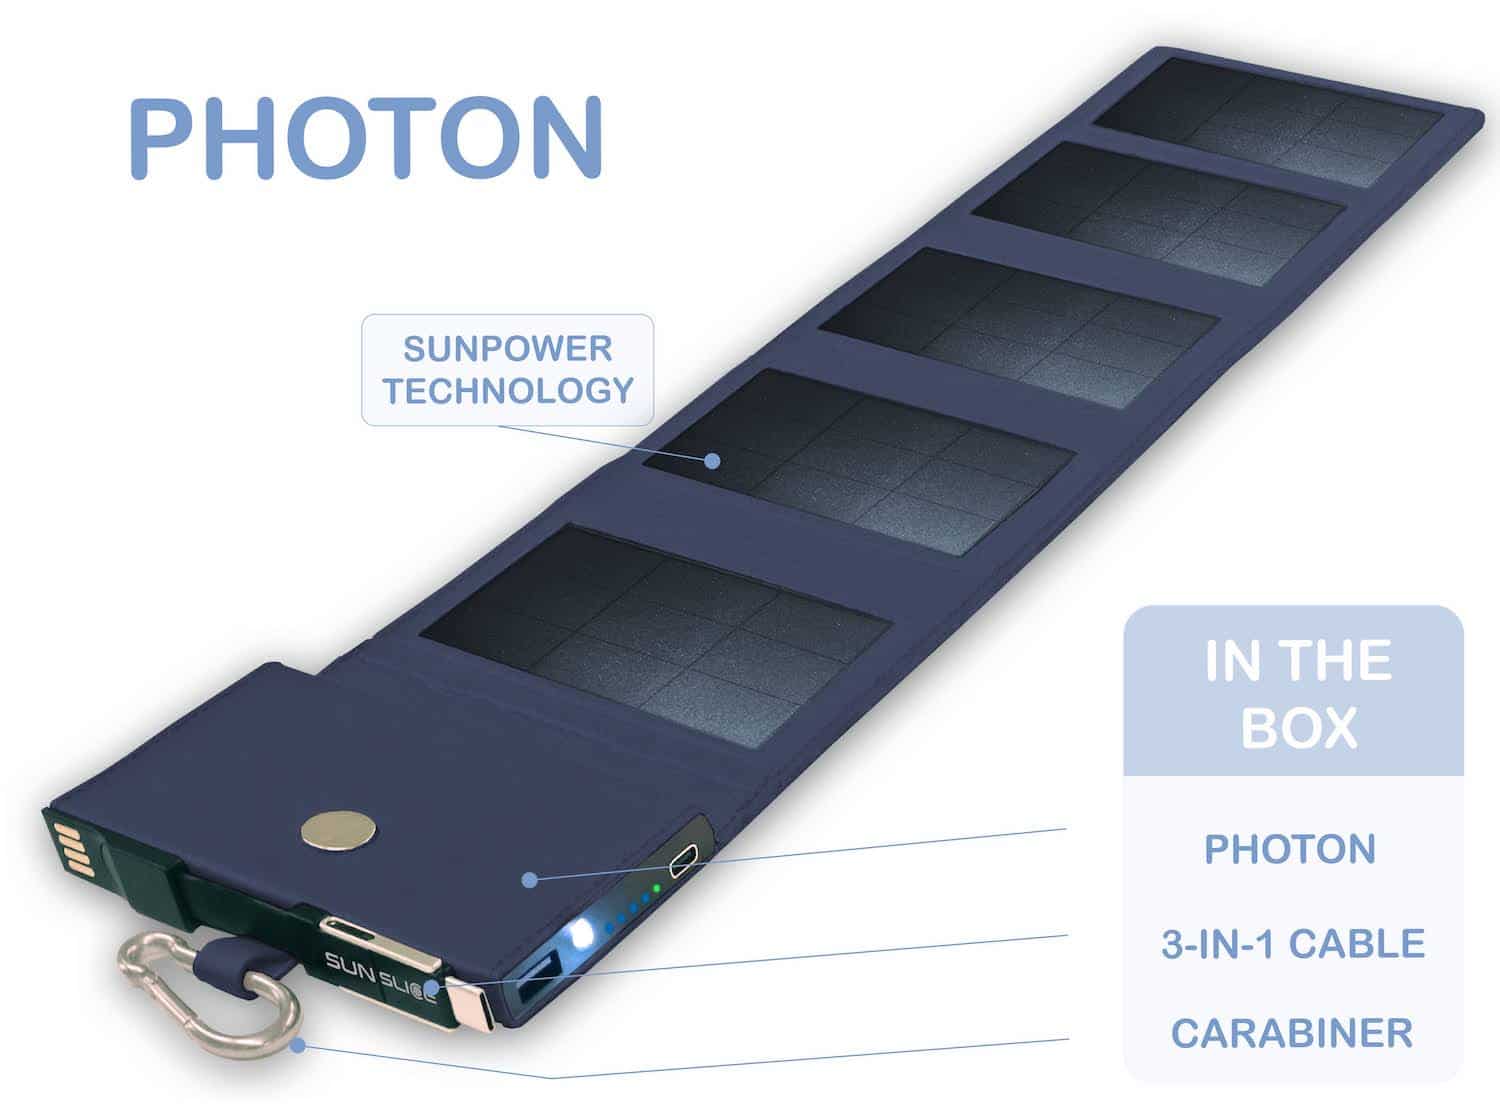 photon chargeur solaire bleu Batterie Externe sur fond blanc avec spécifications